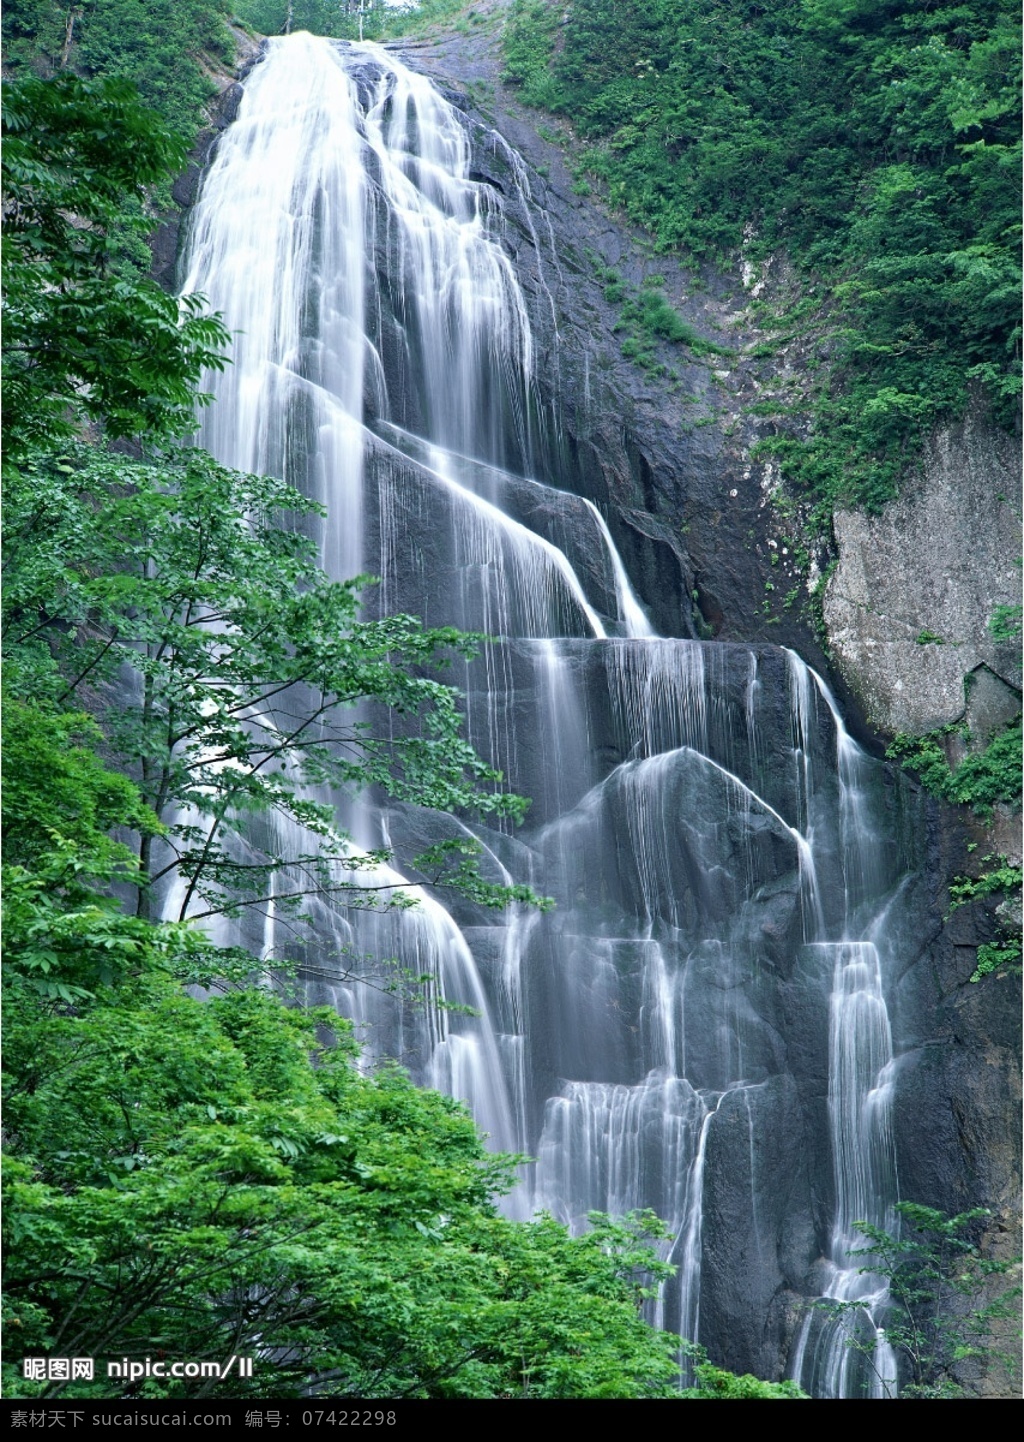 山间瀑布 瀑布 流水 瀑布图片 瀑布风景 摄影图 自然景观 山水风景 瀑布流水 摄影图库